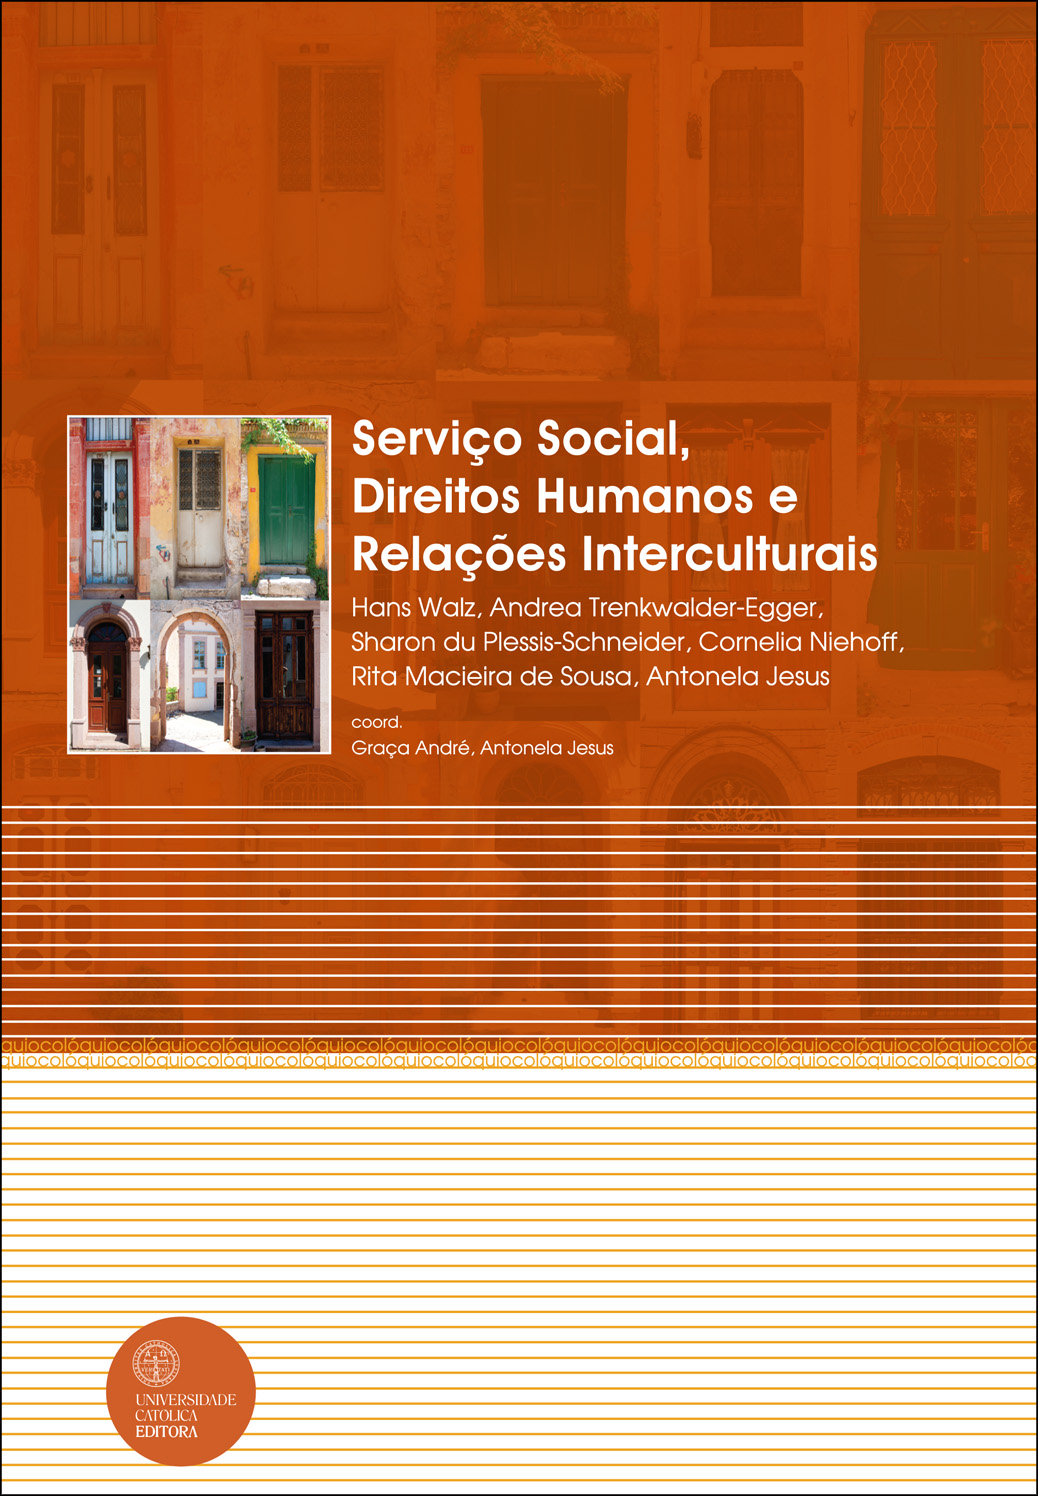 SERVIÇO SOCIAL, DIREITOS HUMANOS E RELAÇÕES INTERCULTURAIS - Universidade Católica Editora